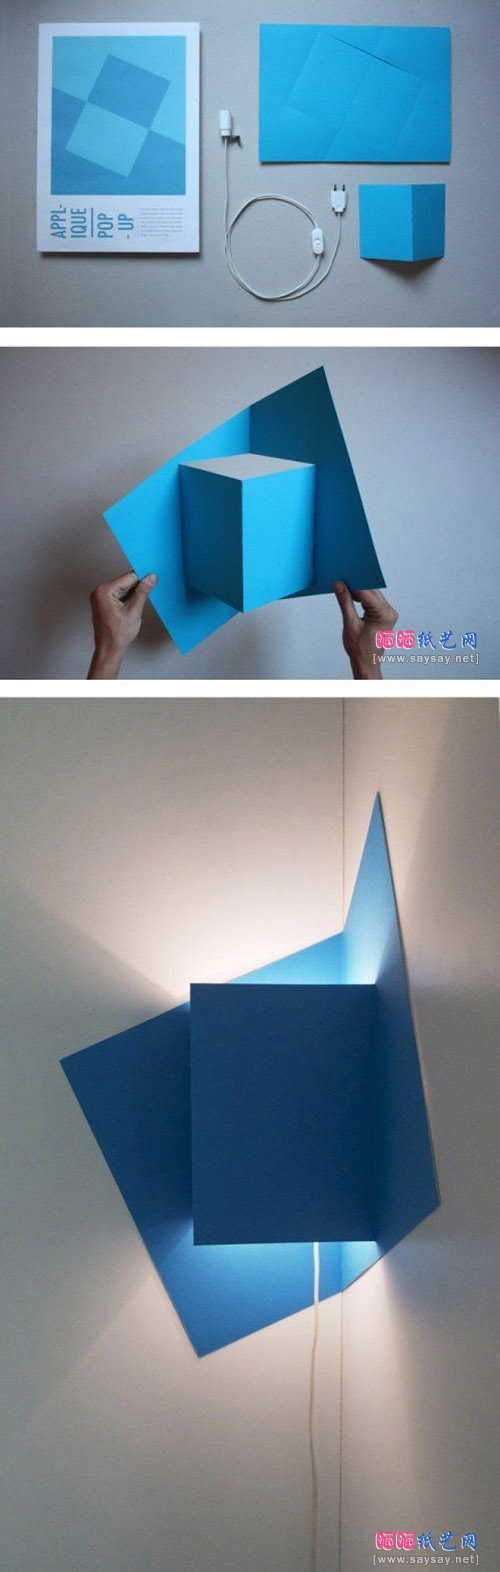 简单折纸变身时尚灯具罩平面图及效果图2